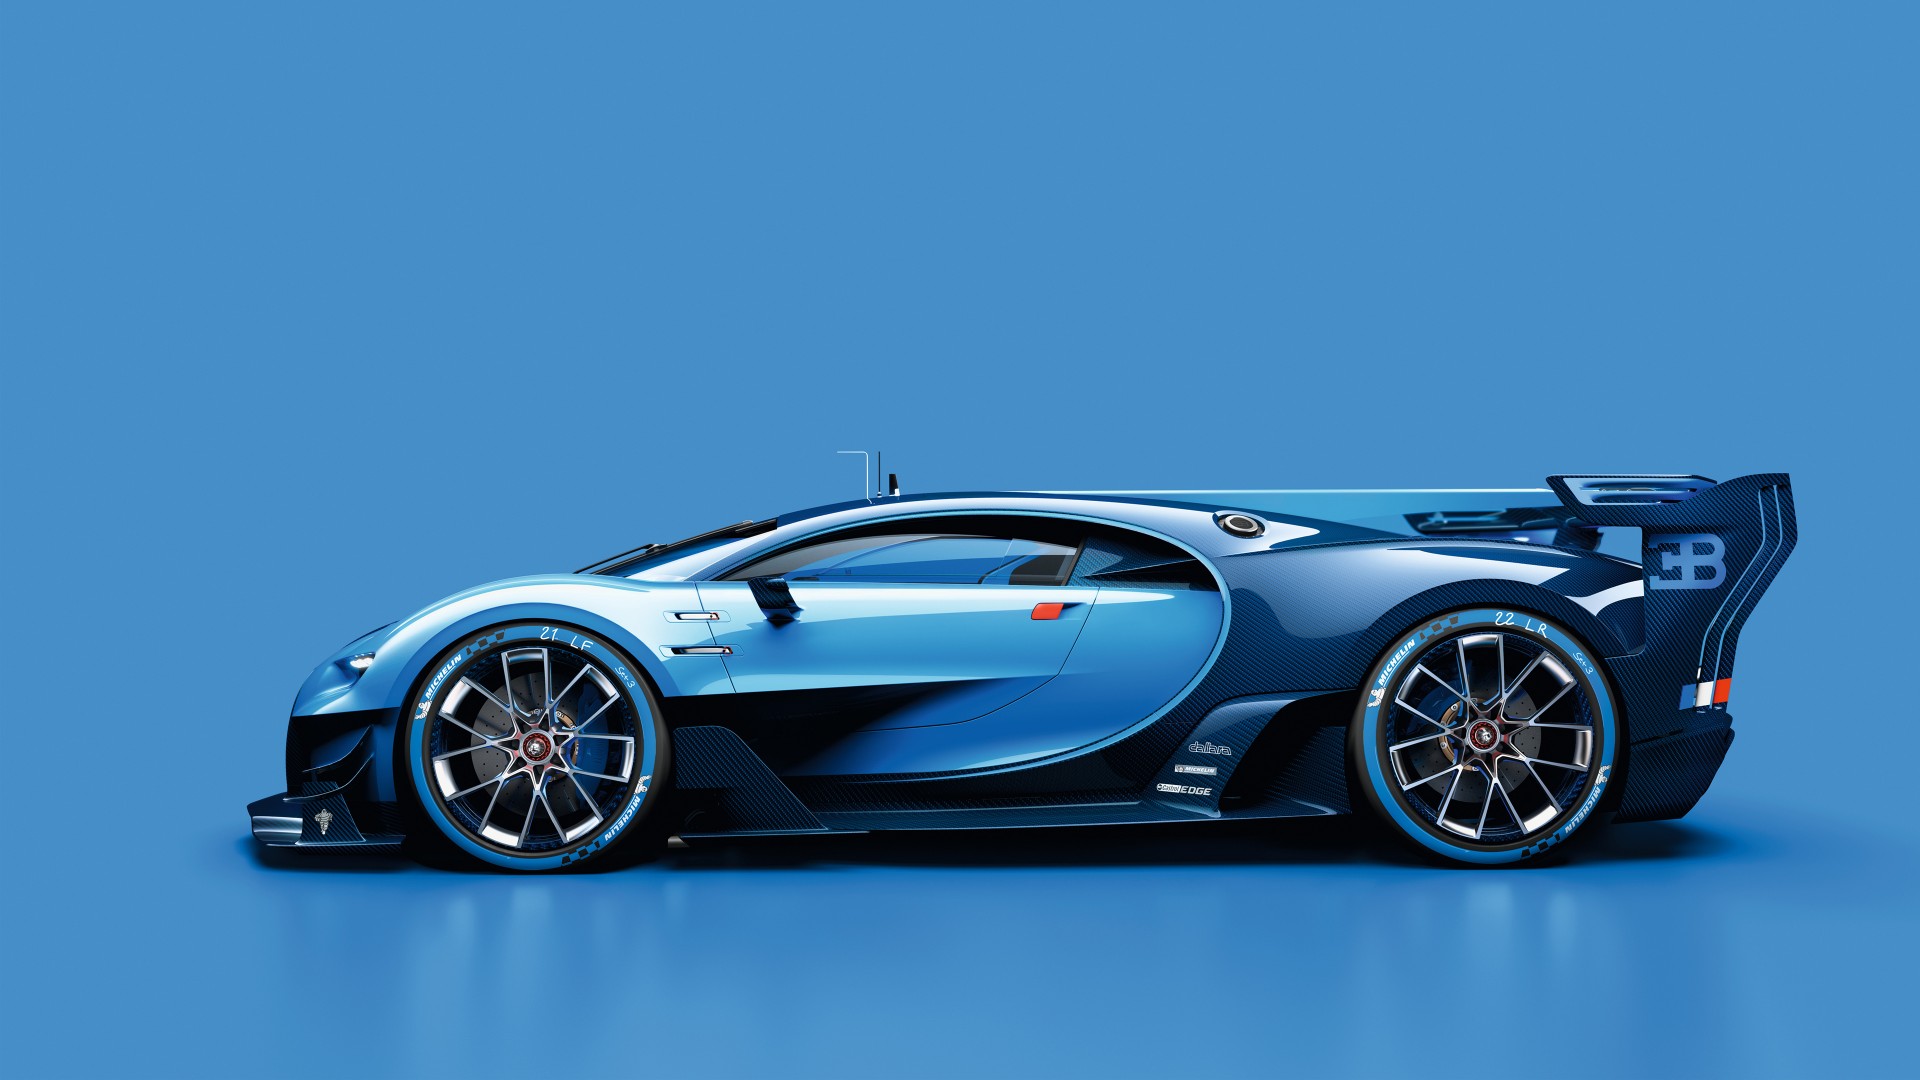 2015 Bugatti Vision Gran Turismo 7 Wallpaper Hd Car - Bugatti Vision Hd , HD Wallpaper & Backgrounds